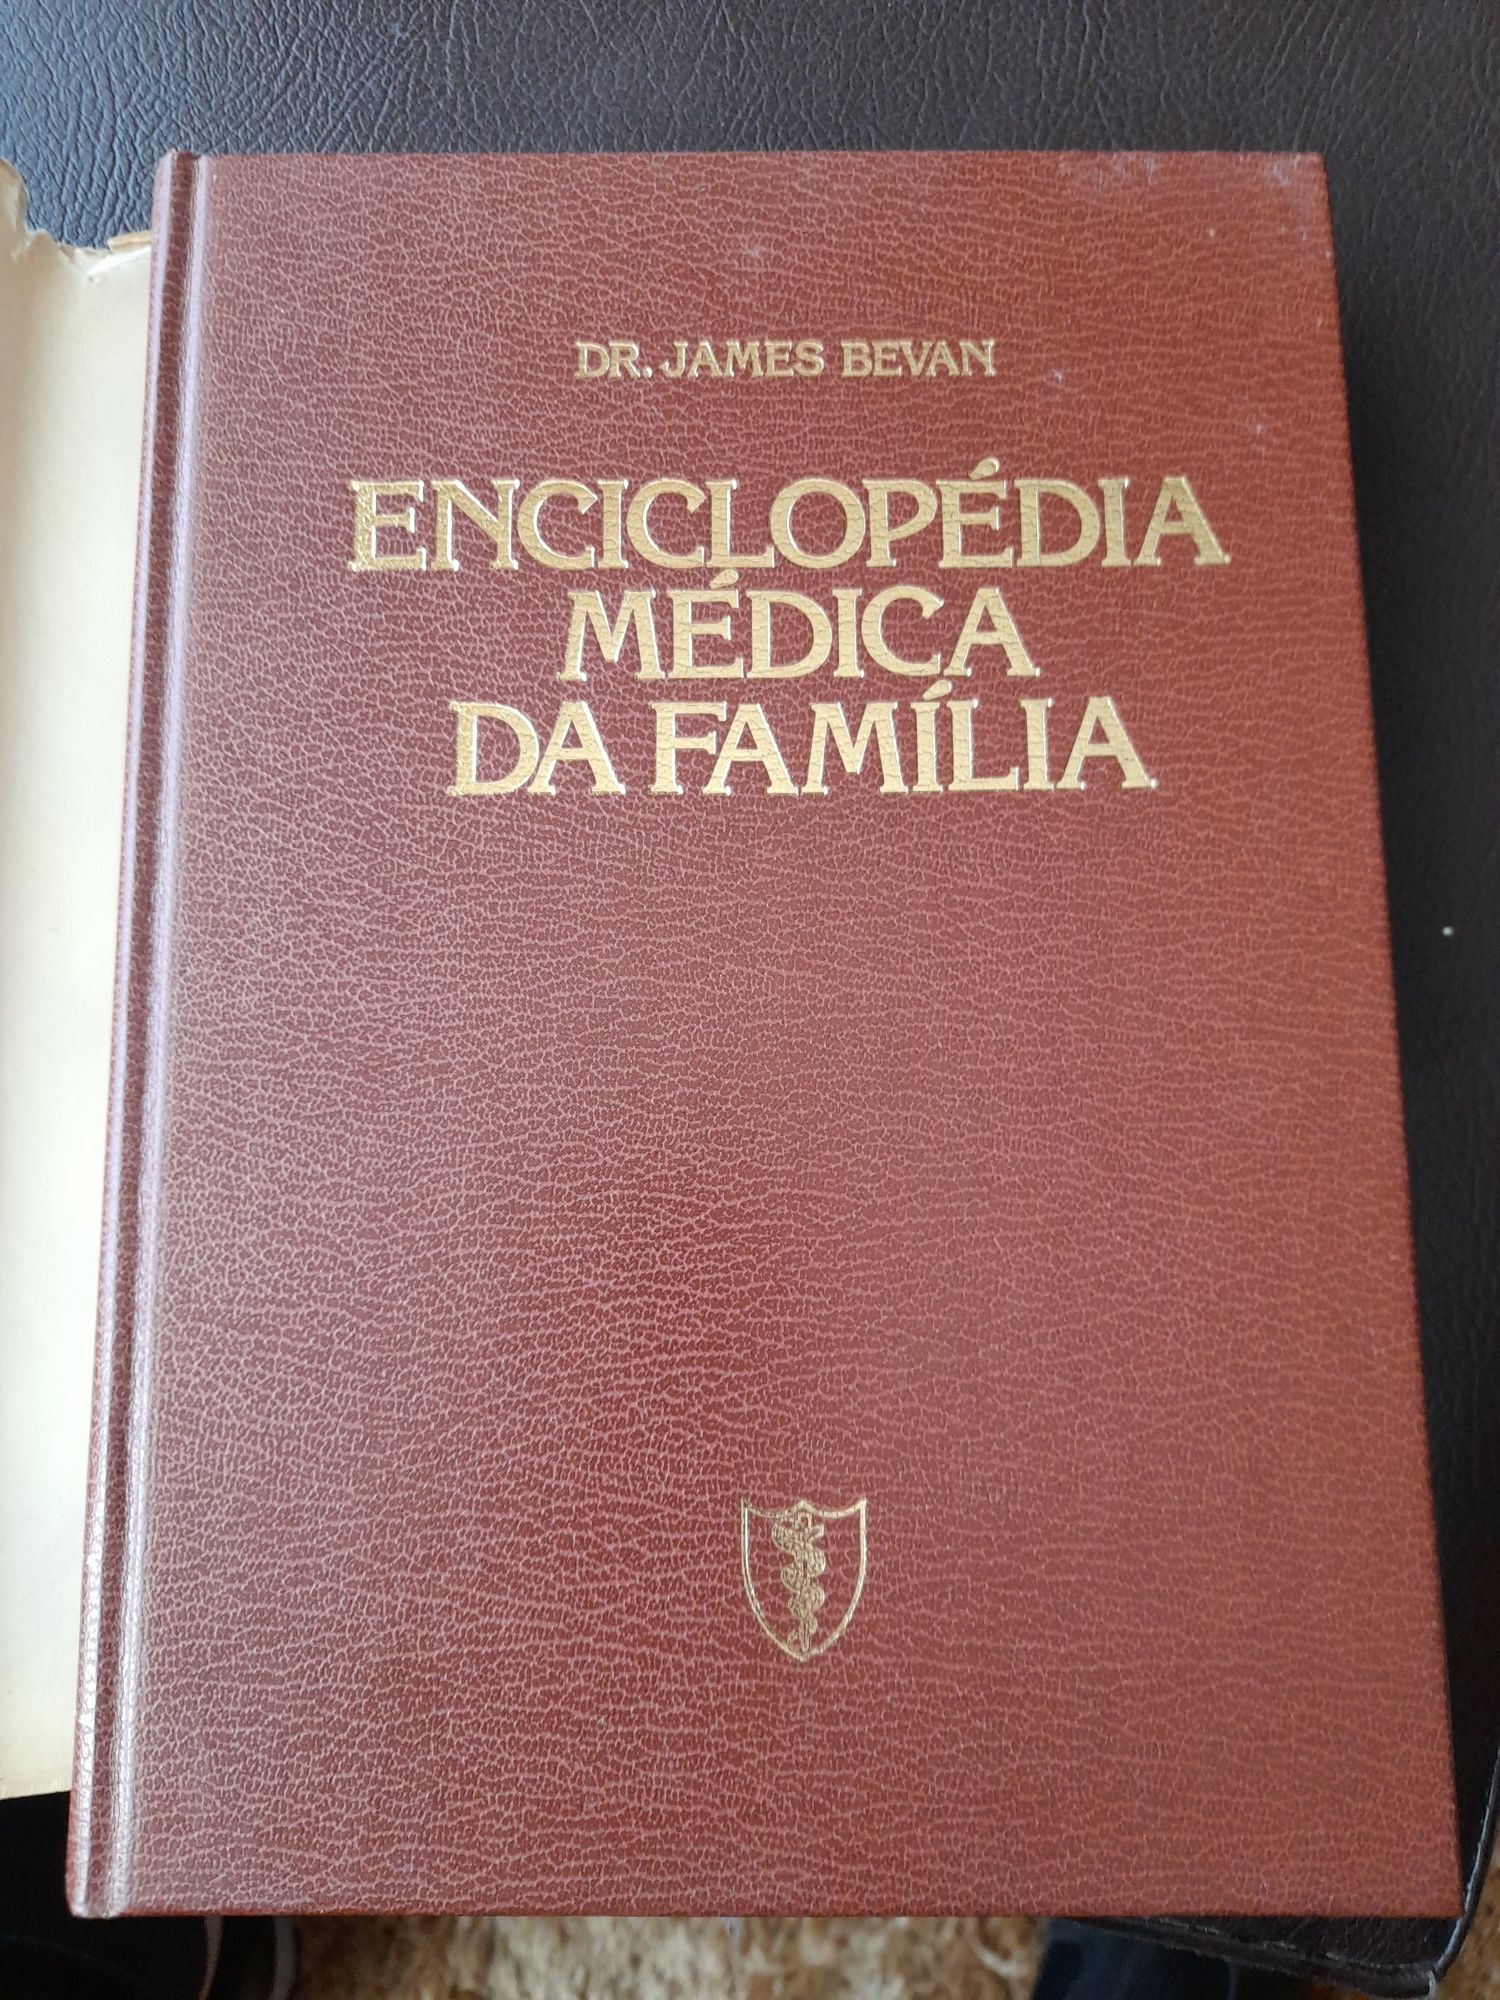 Enciclopedia medica da familia